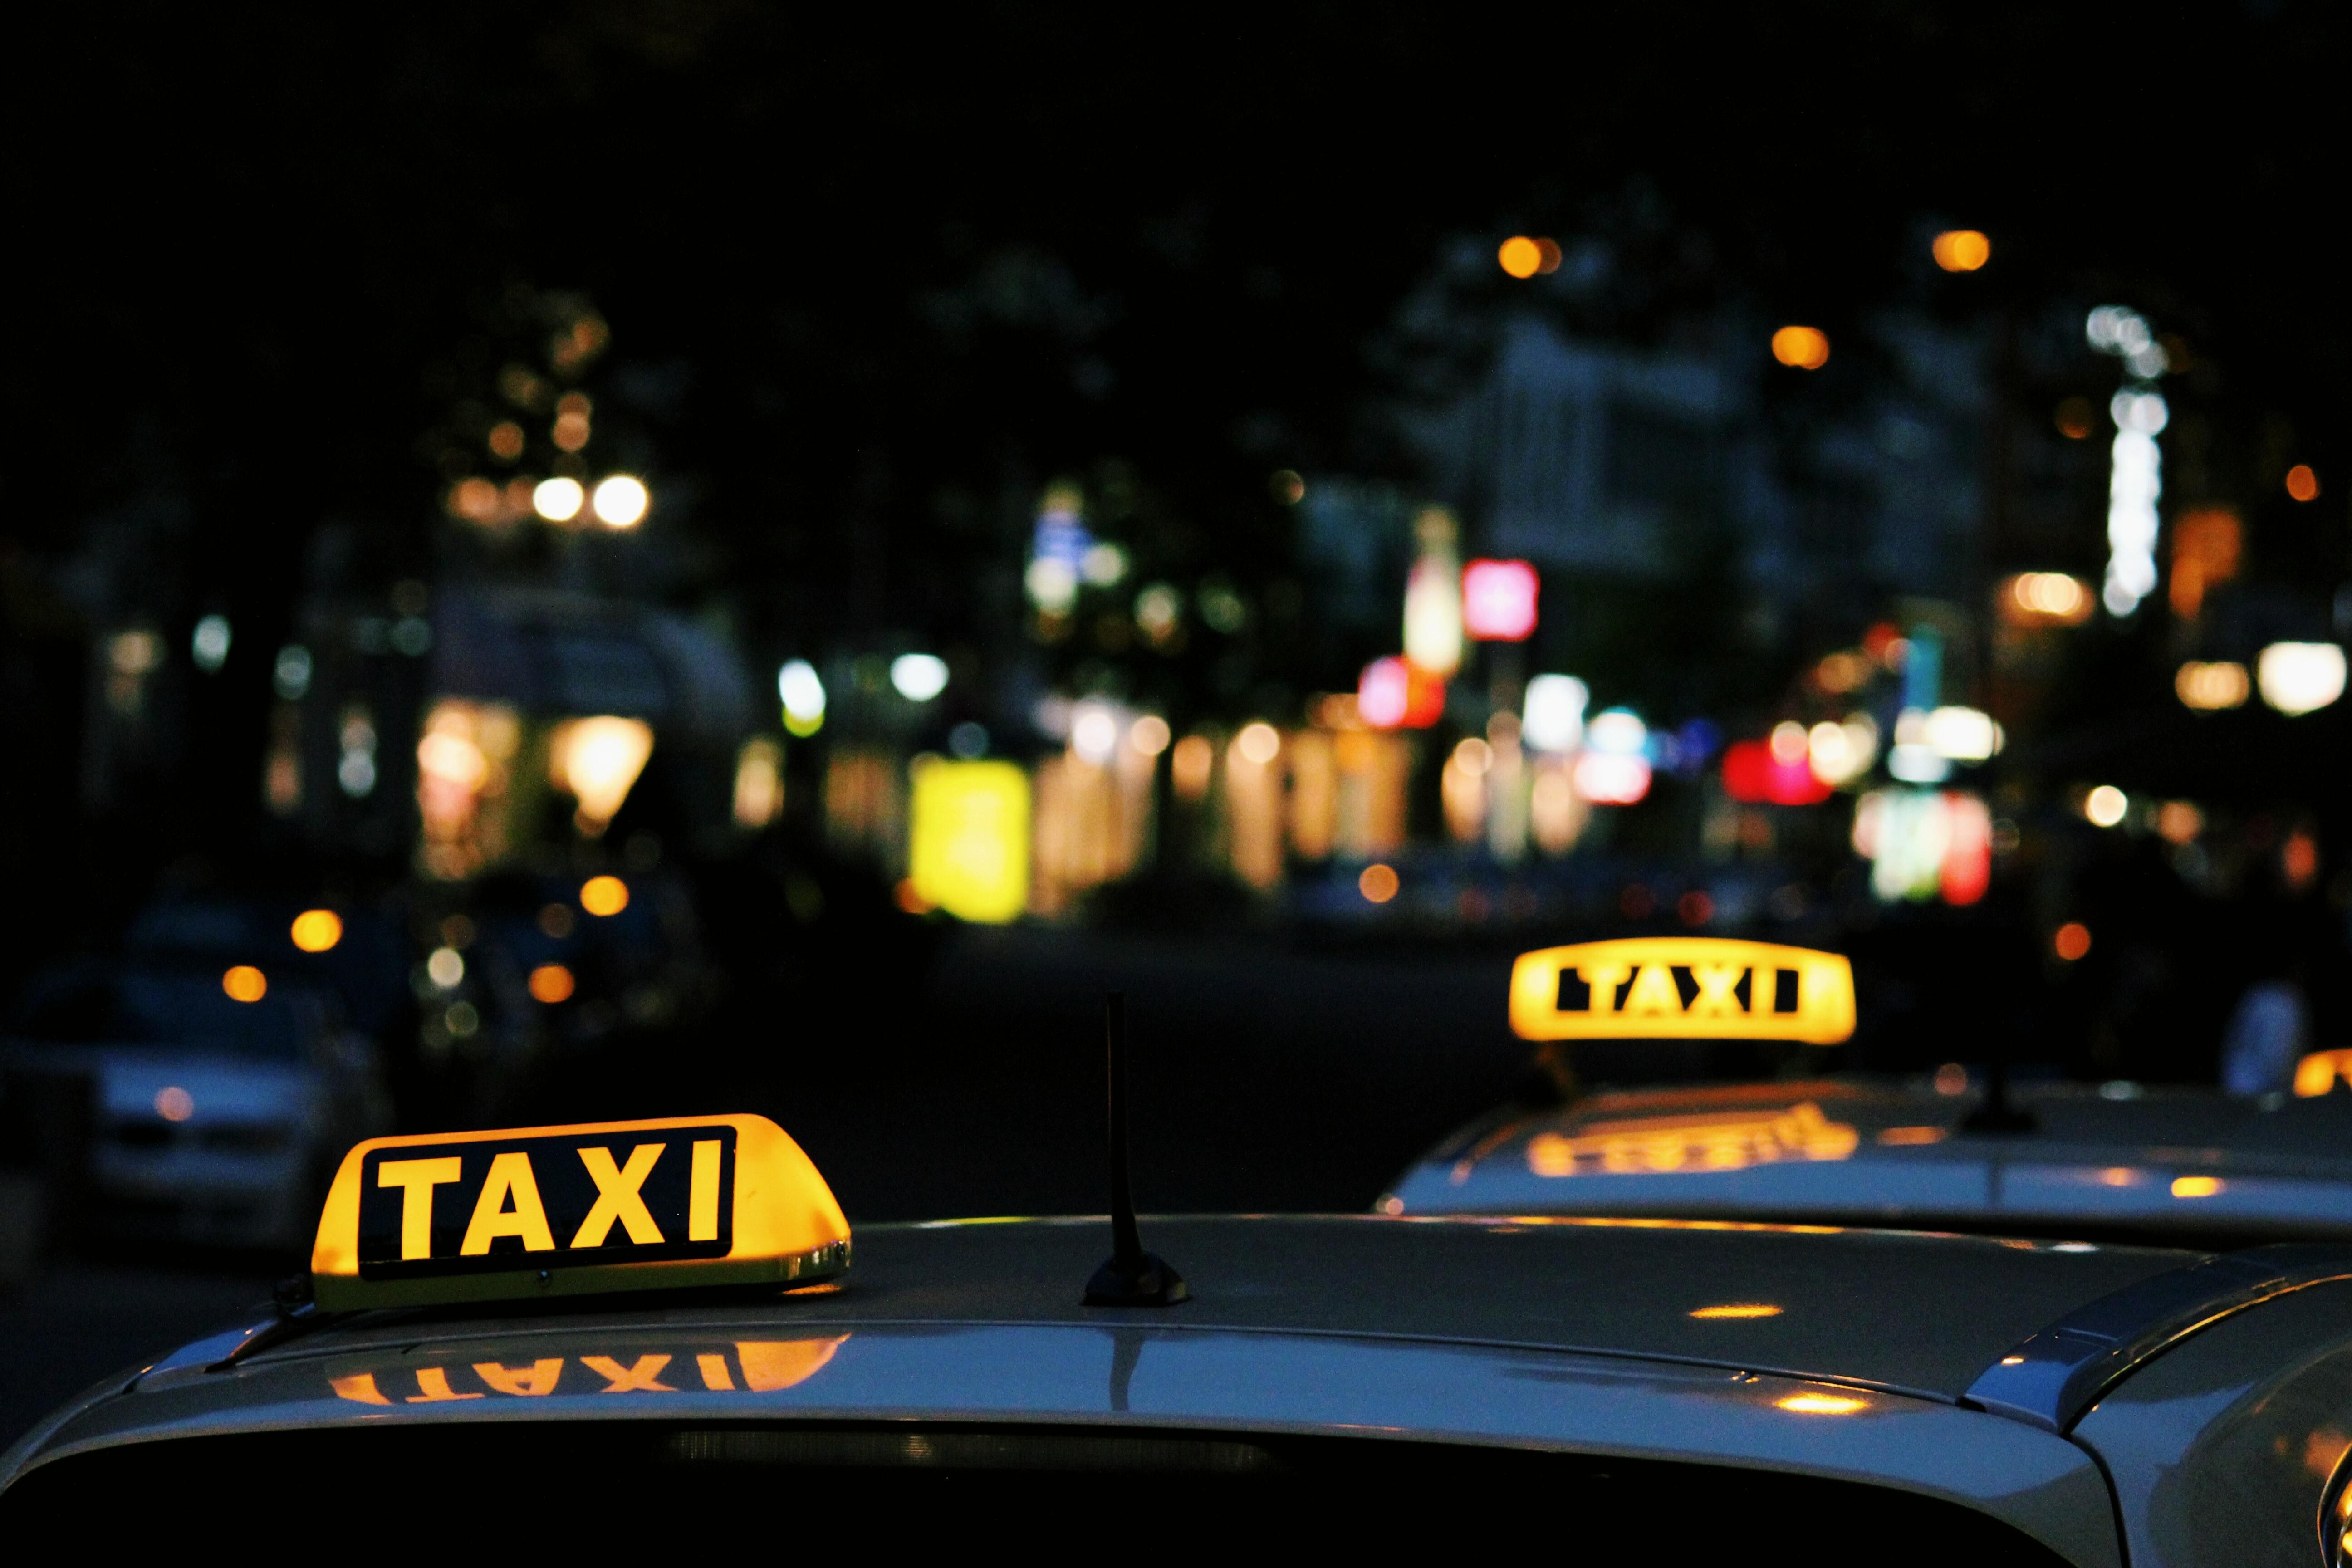 Таксі відправляється на реформу: чому та що необхідно змінити?